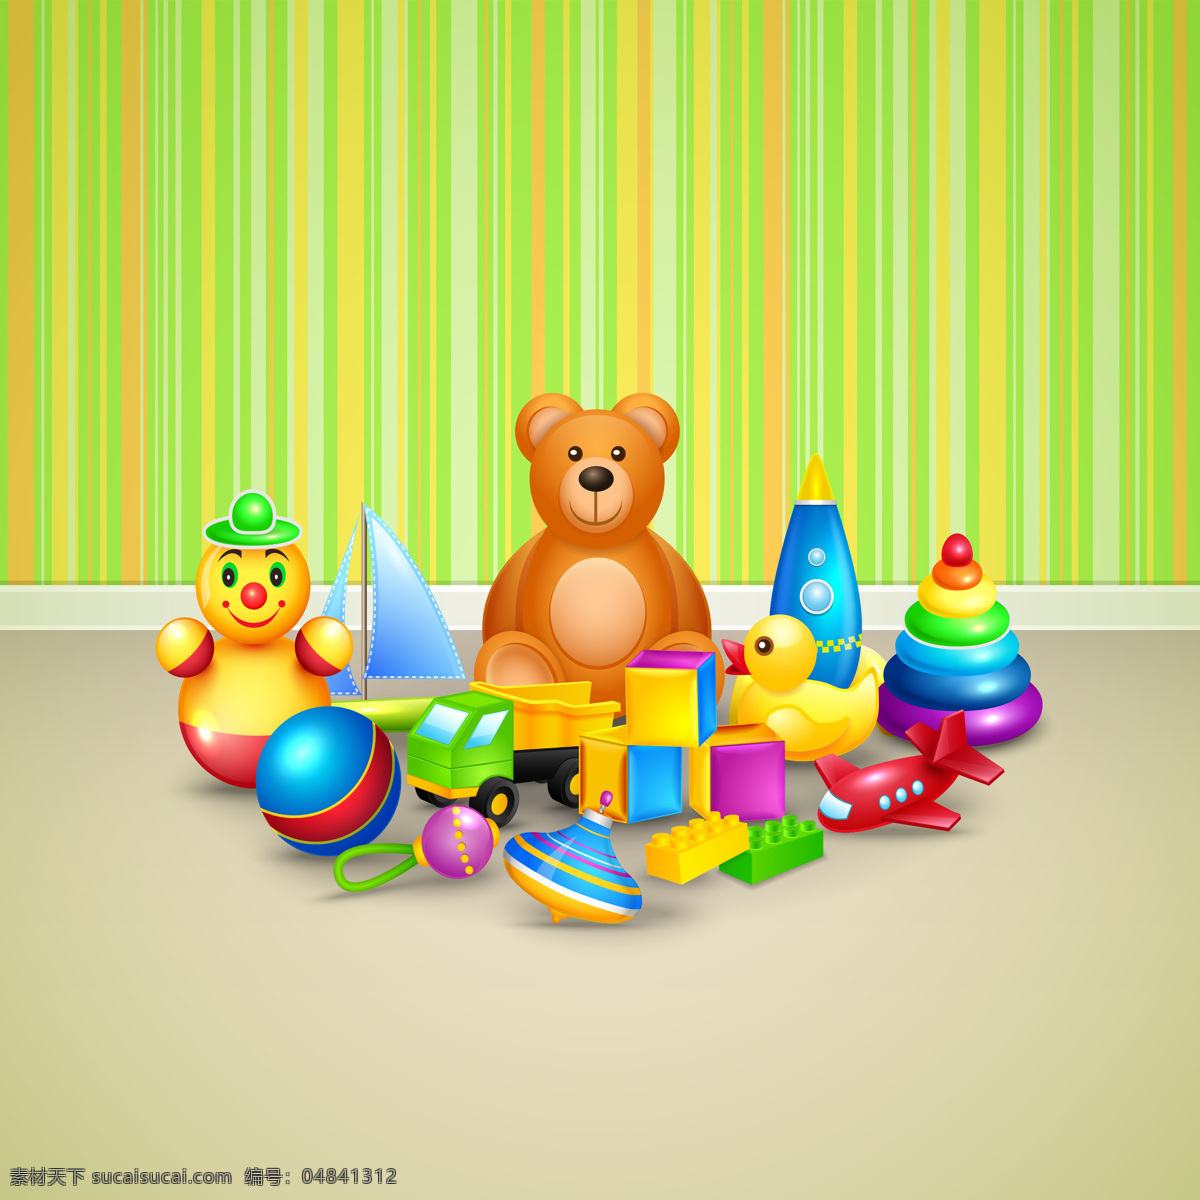 房间 现实 玩具 婴儿 儿童 色彩 熊 五颜六色 地板 泰迪熊 娱乐 儿童玩具 现实主义 物体 物品